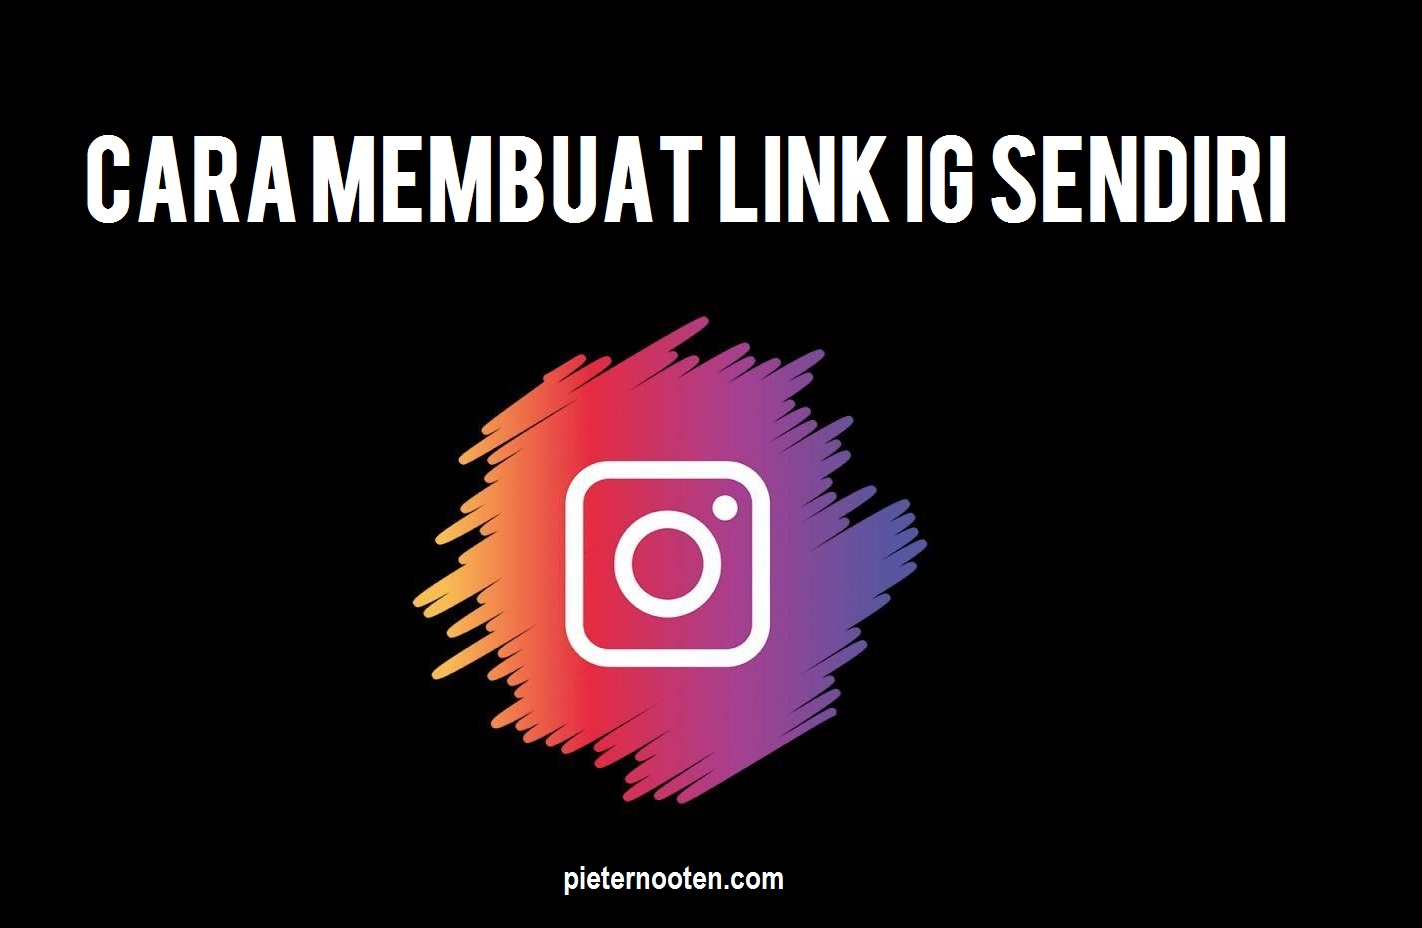 Cara Membuat Link Instagram Sendiri - Pieter Nooten